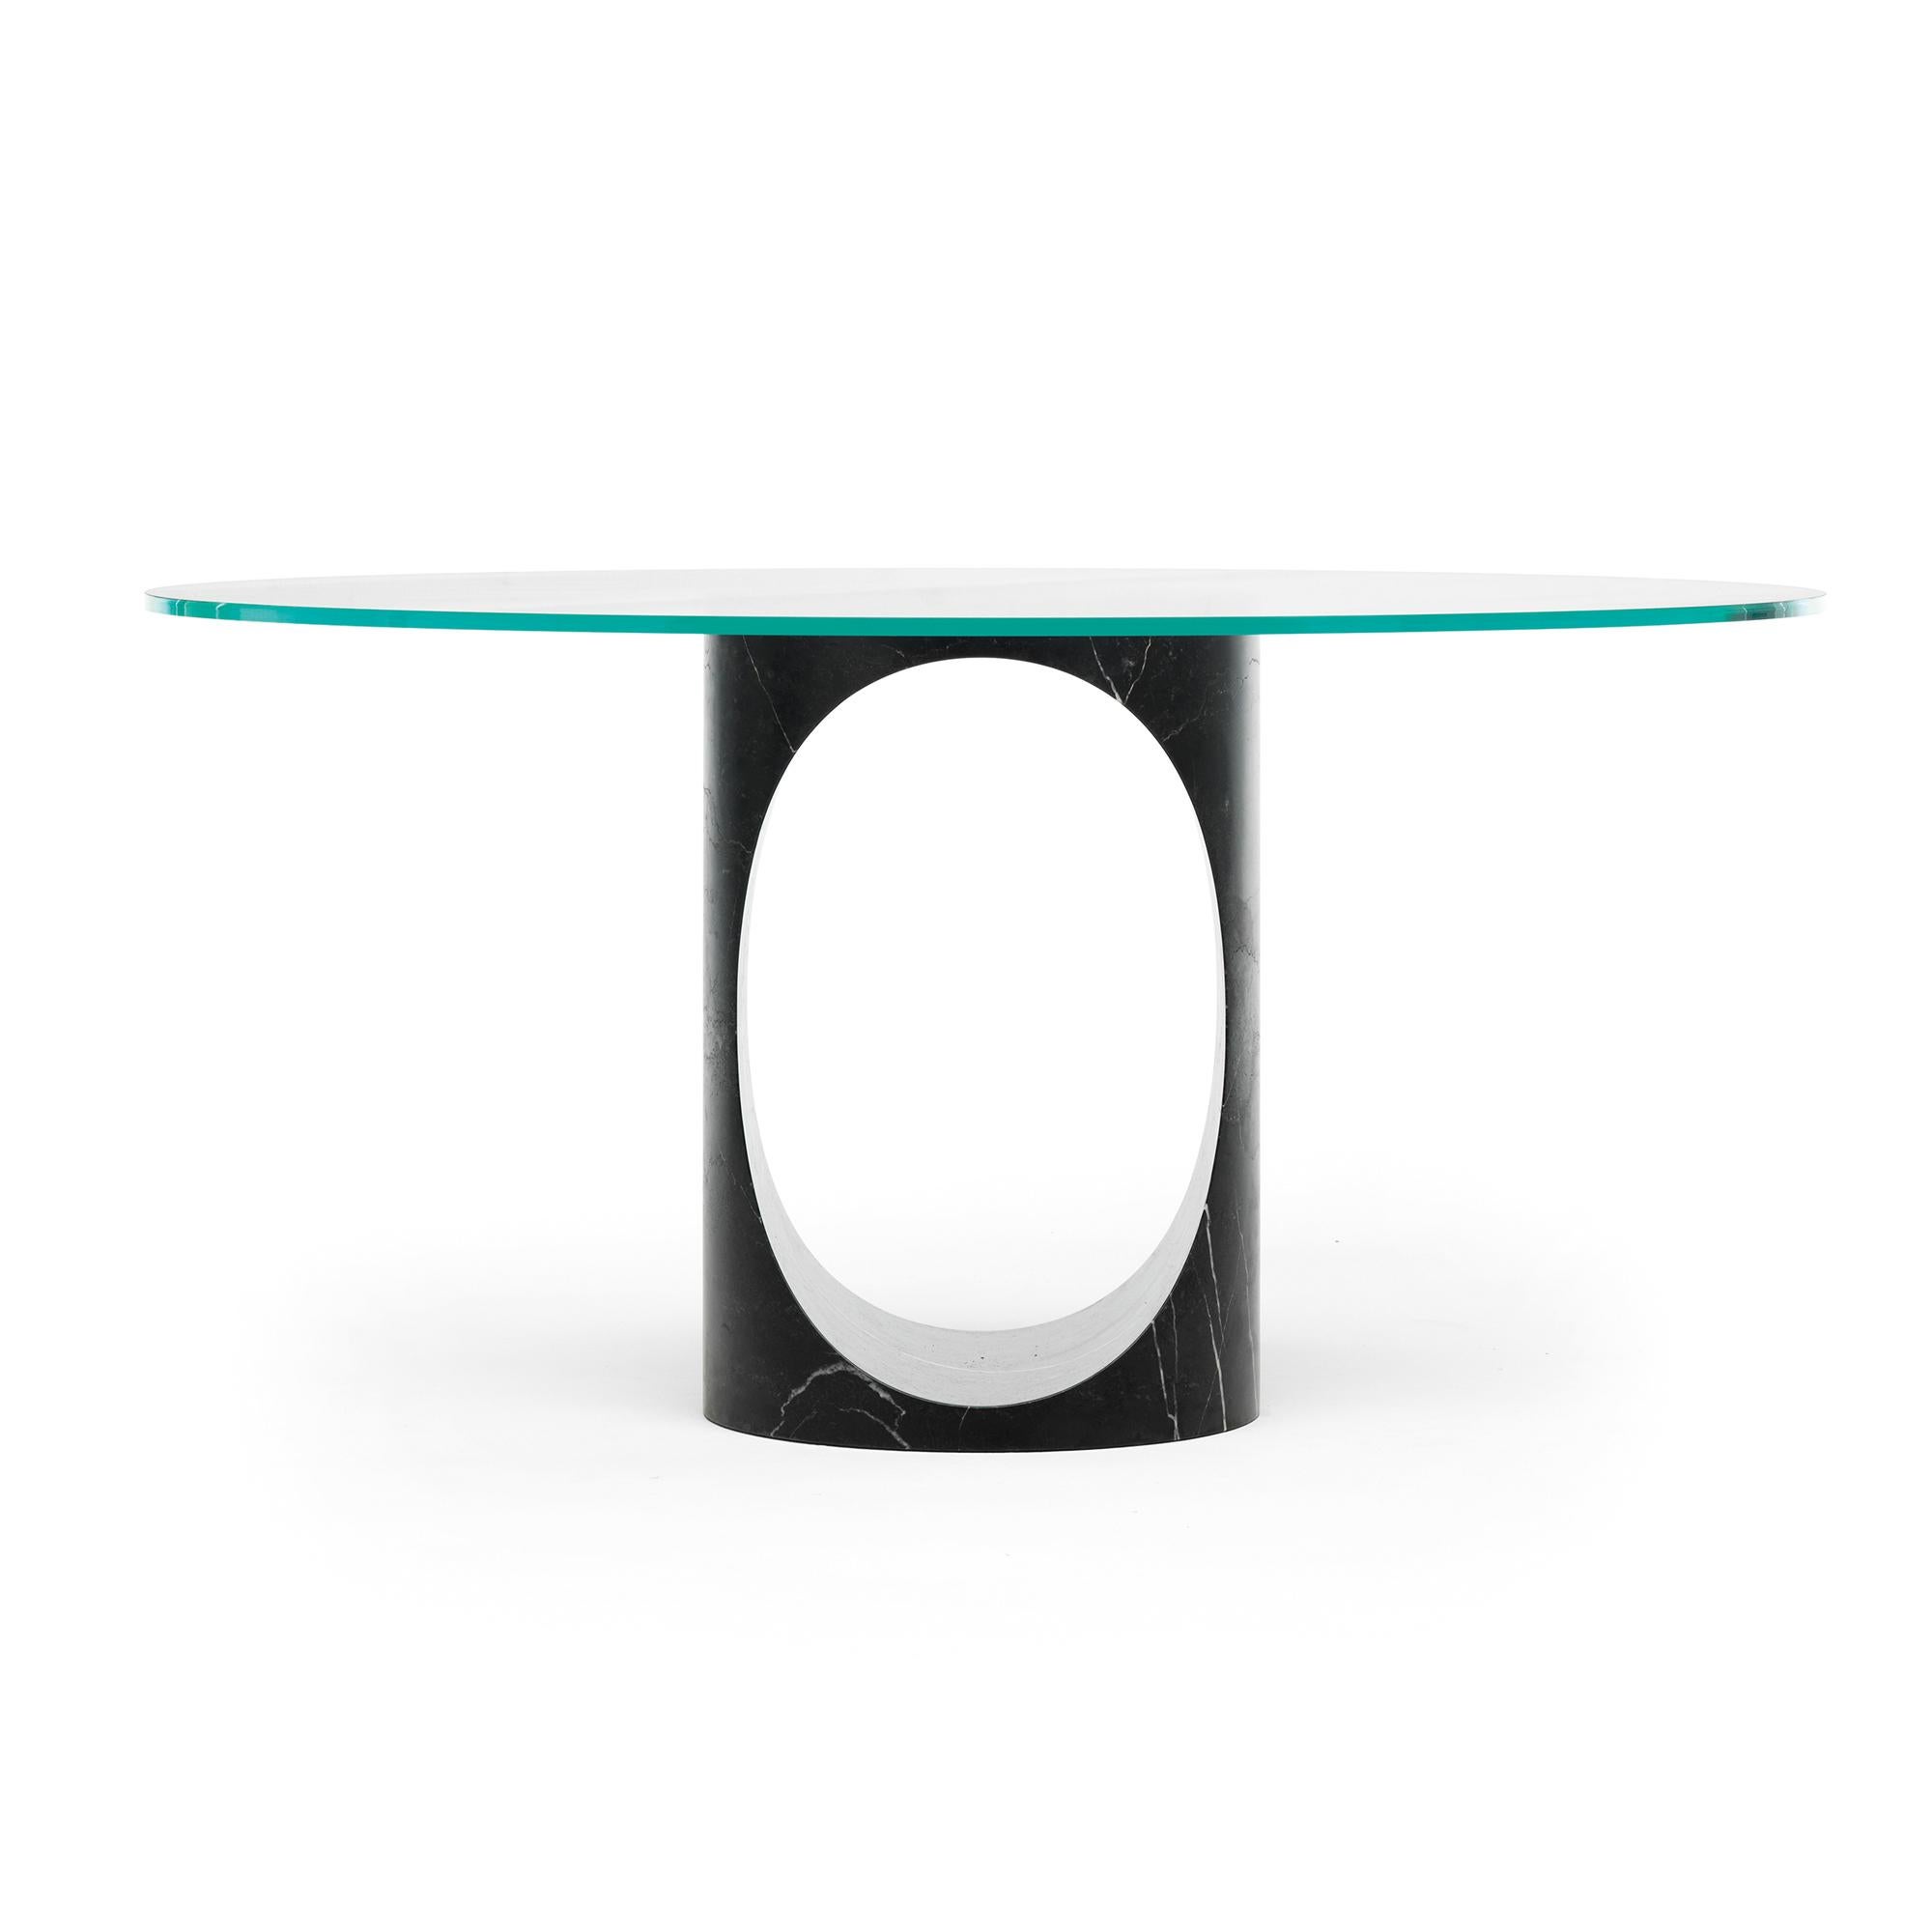 Rolle est la table à manger à tige centrale d'Epònimo. La base, taillée dans un seul bloc de marbre, est une sculpture à la fois géométrique et organique qui change radicalement lorsqu'on la regarde sous différents angles. Sur le plan fonctionnel,